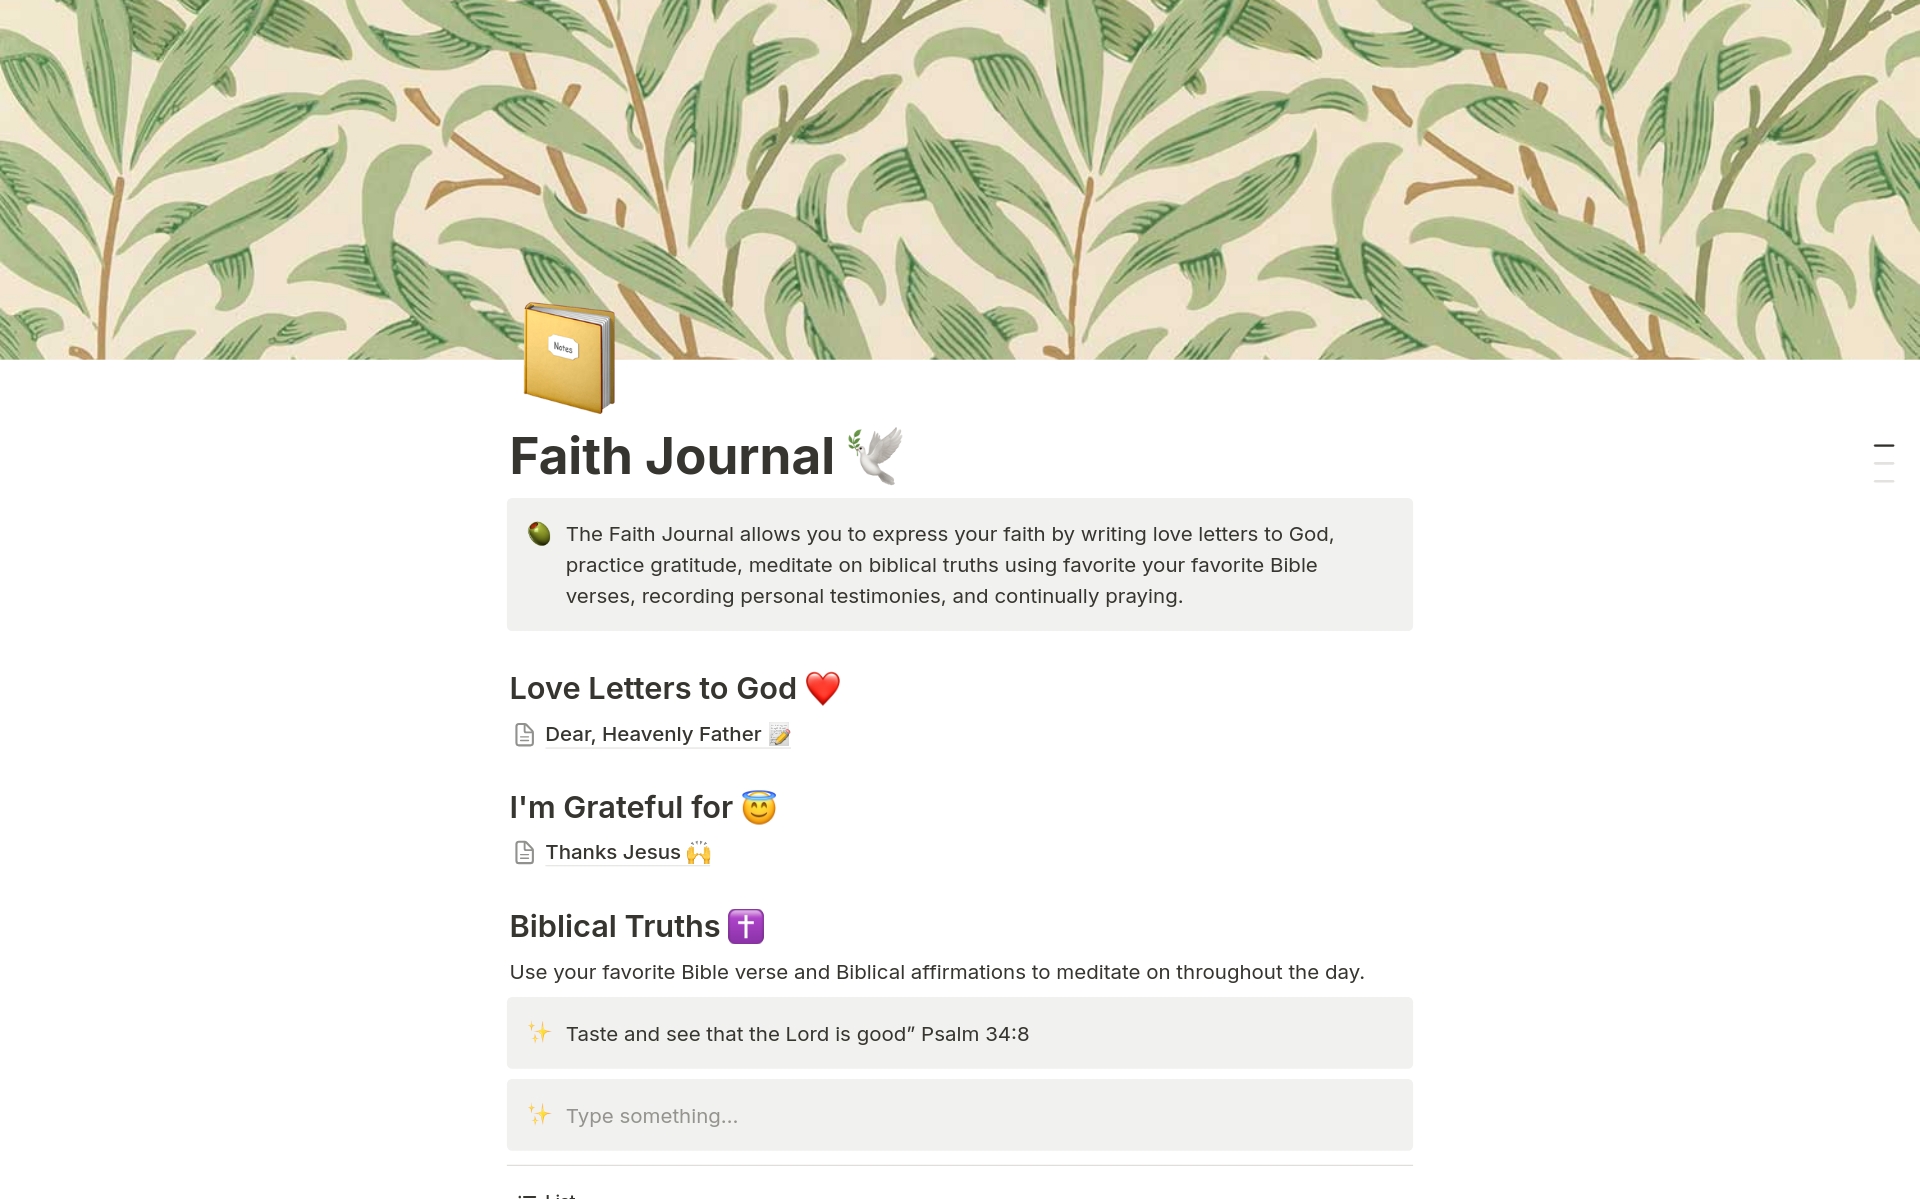 Vista previa de plantilla para Faith Journal